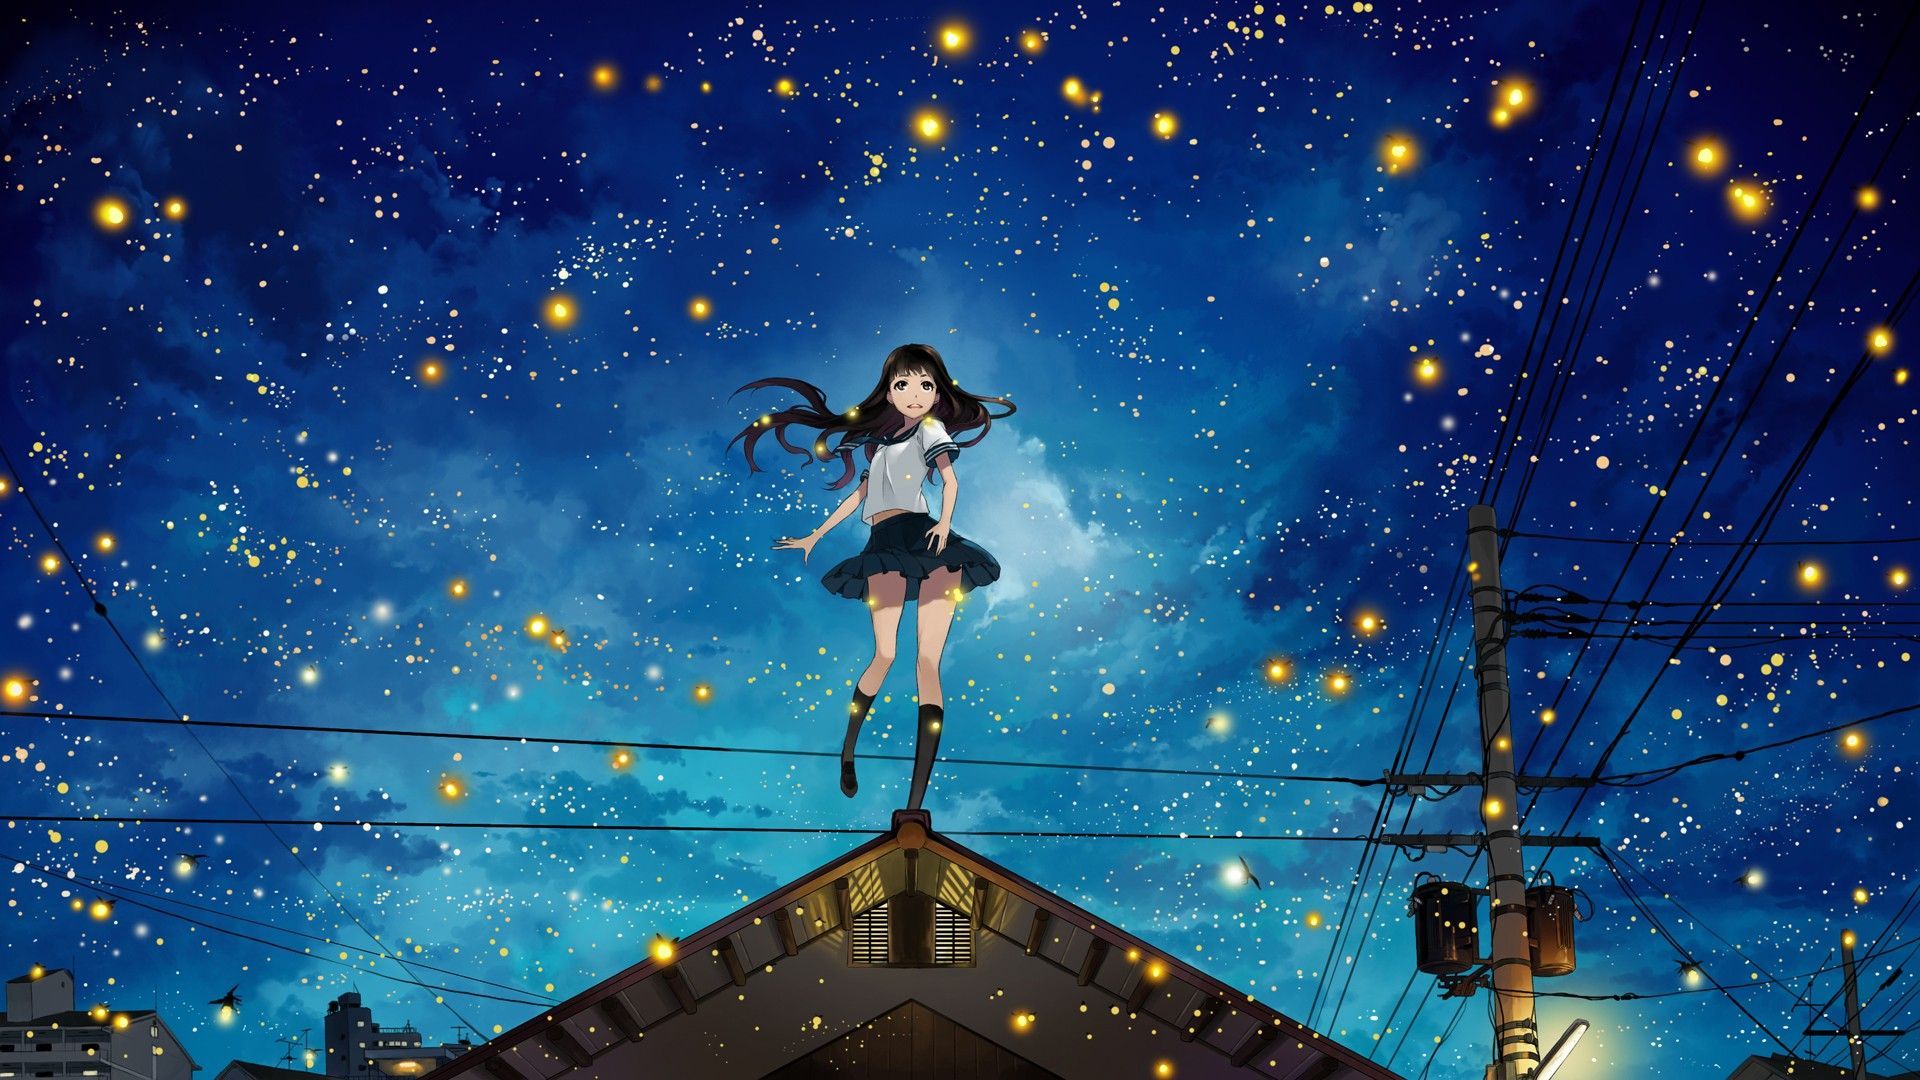 Anime Scenery At Night HD Wallpaperx1080. HD anime wallpaper, Anime scenery, Sky anime